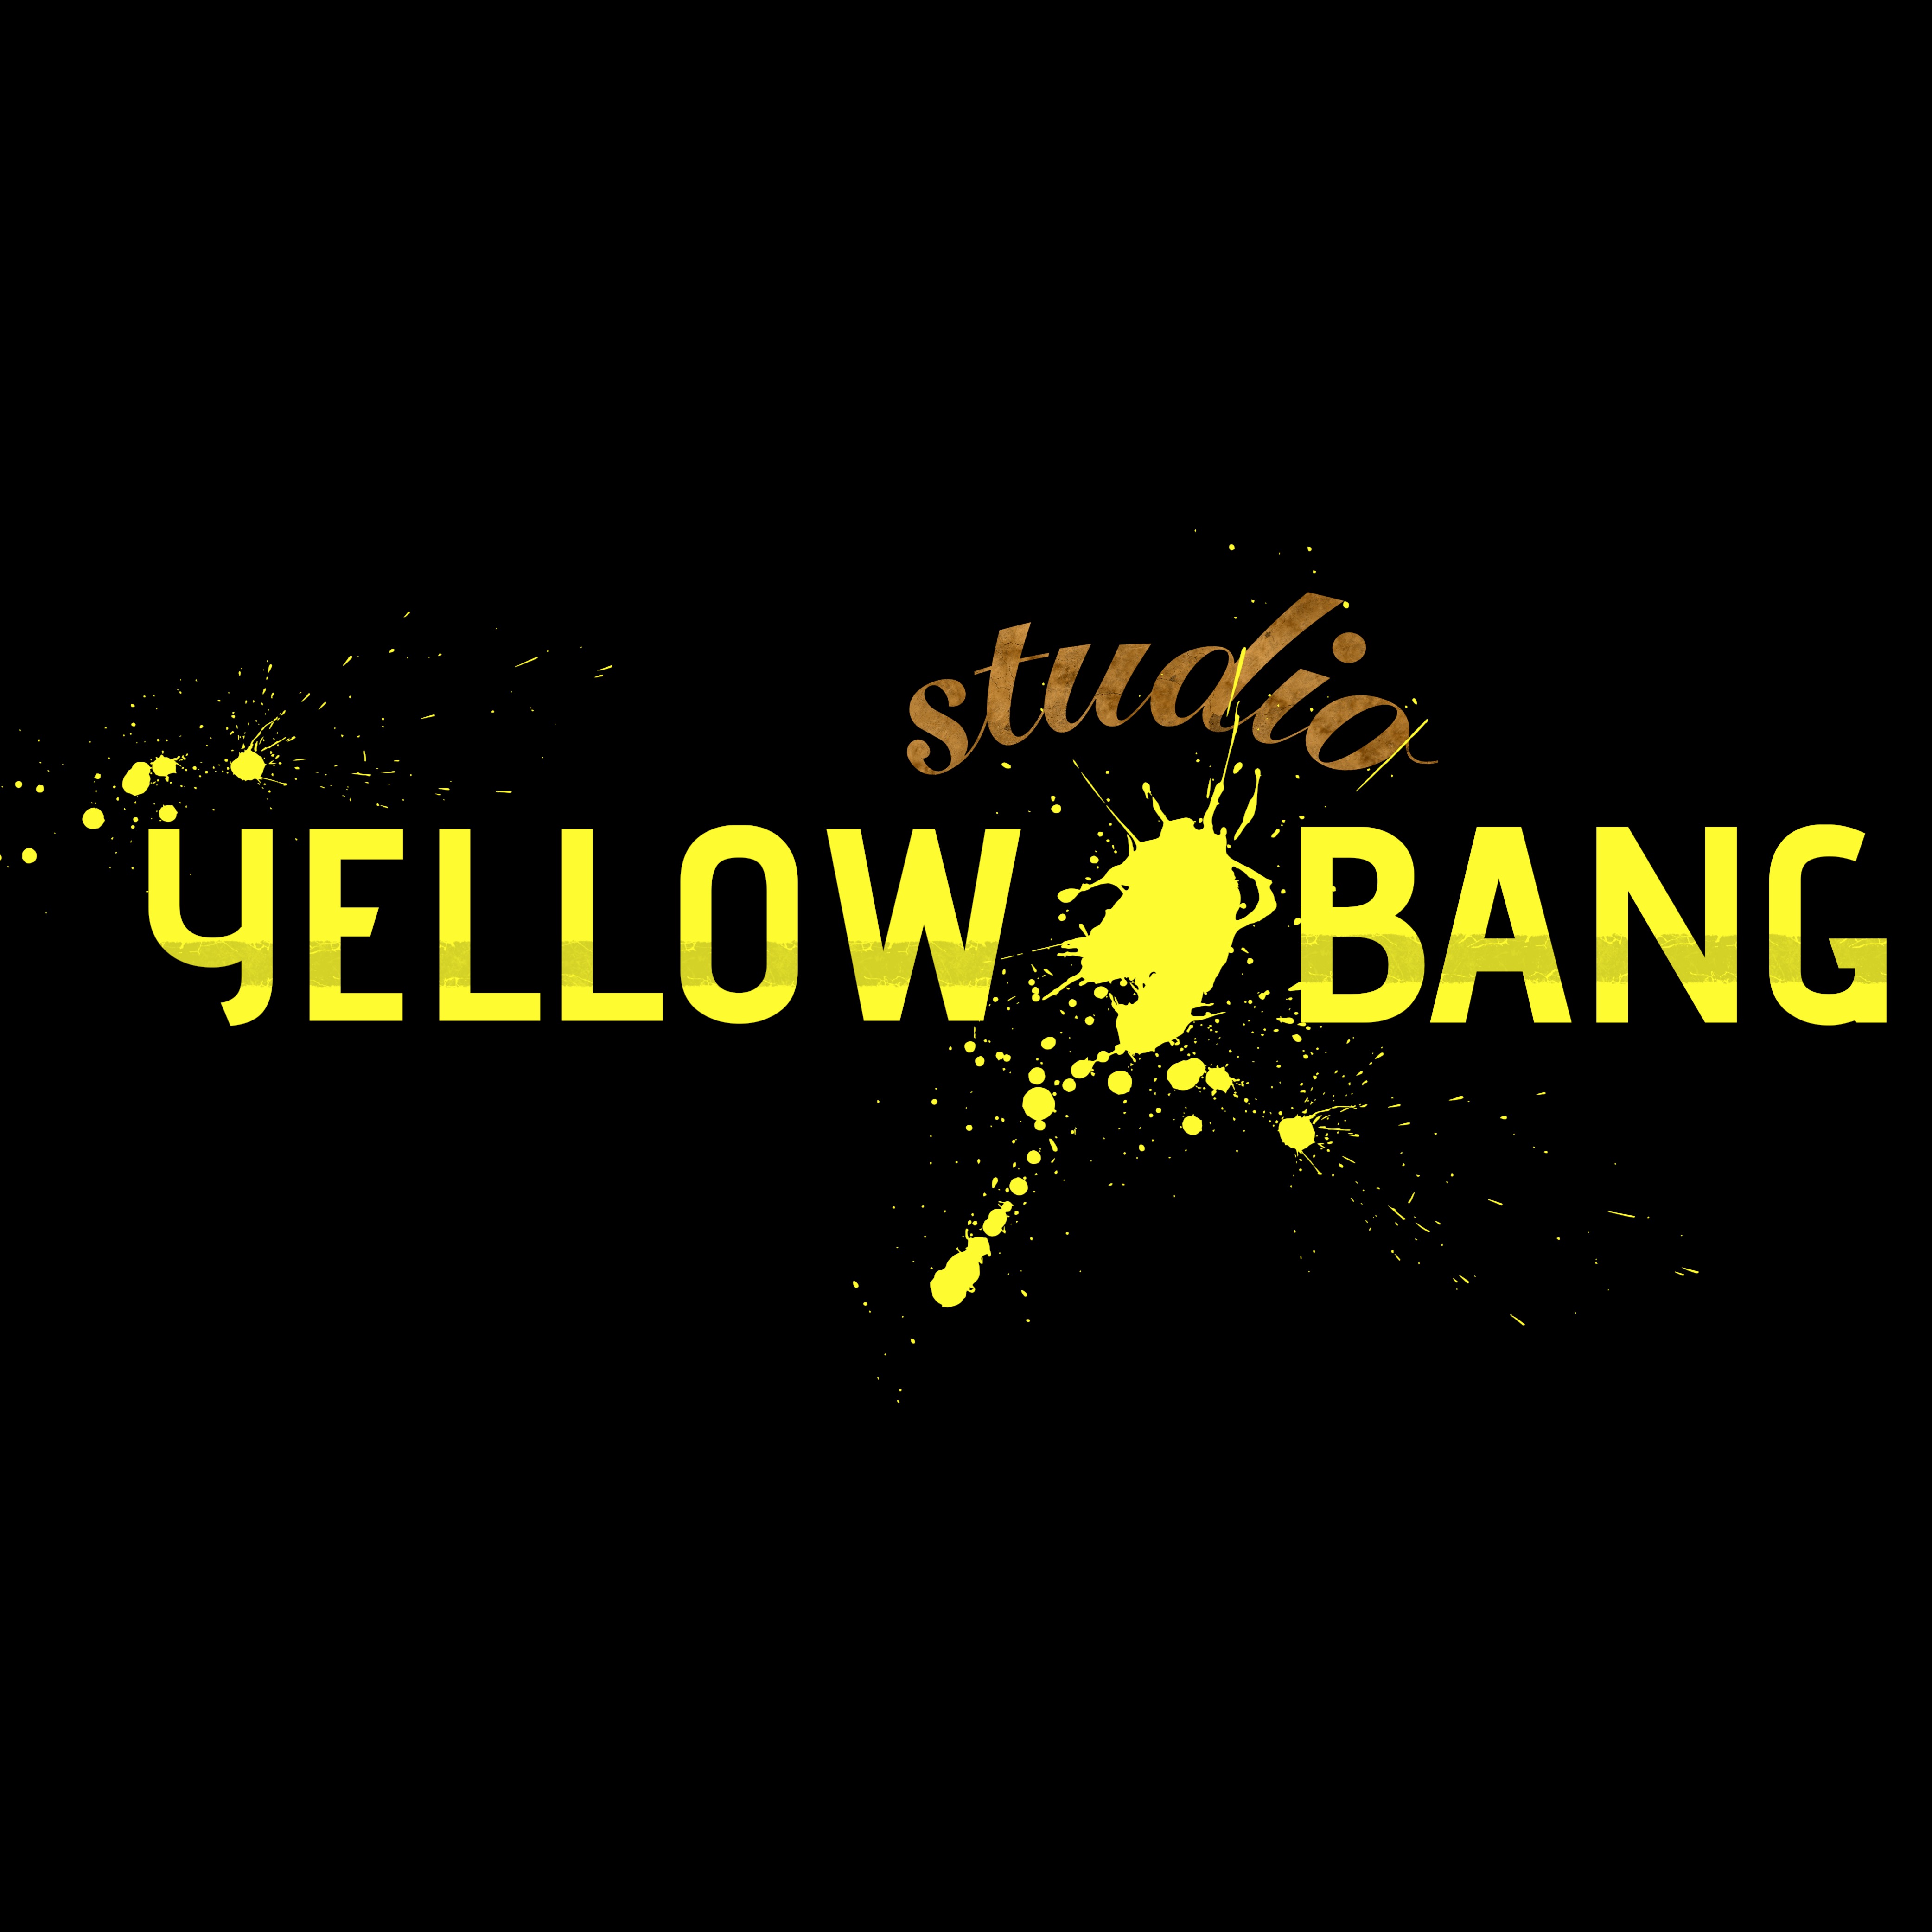 Yellow Bang Studio